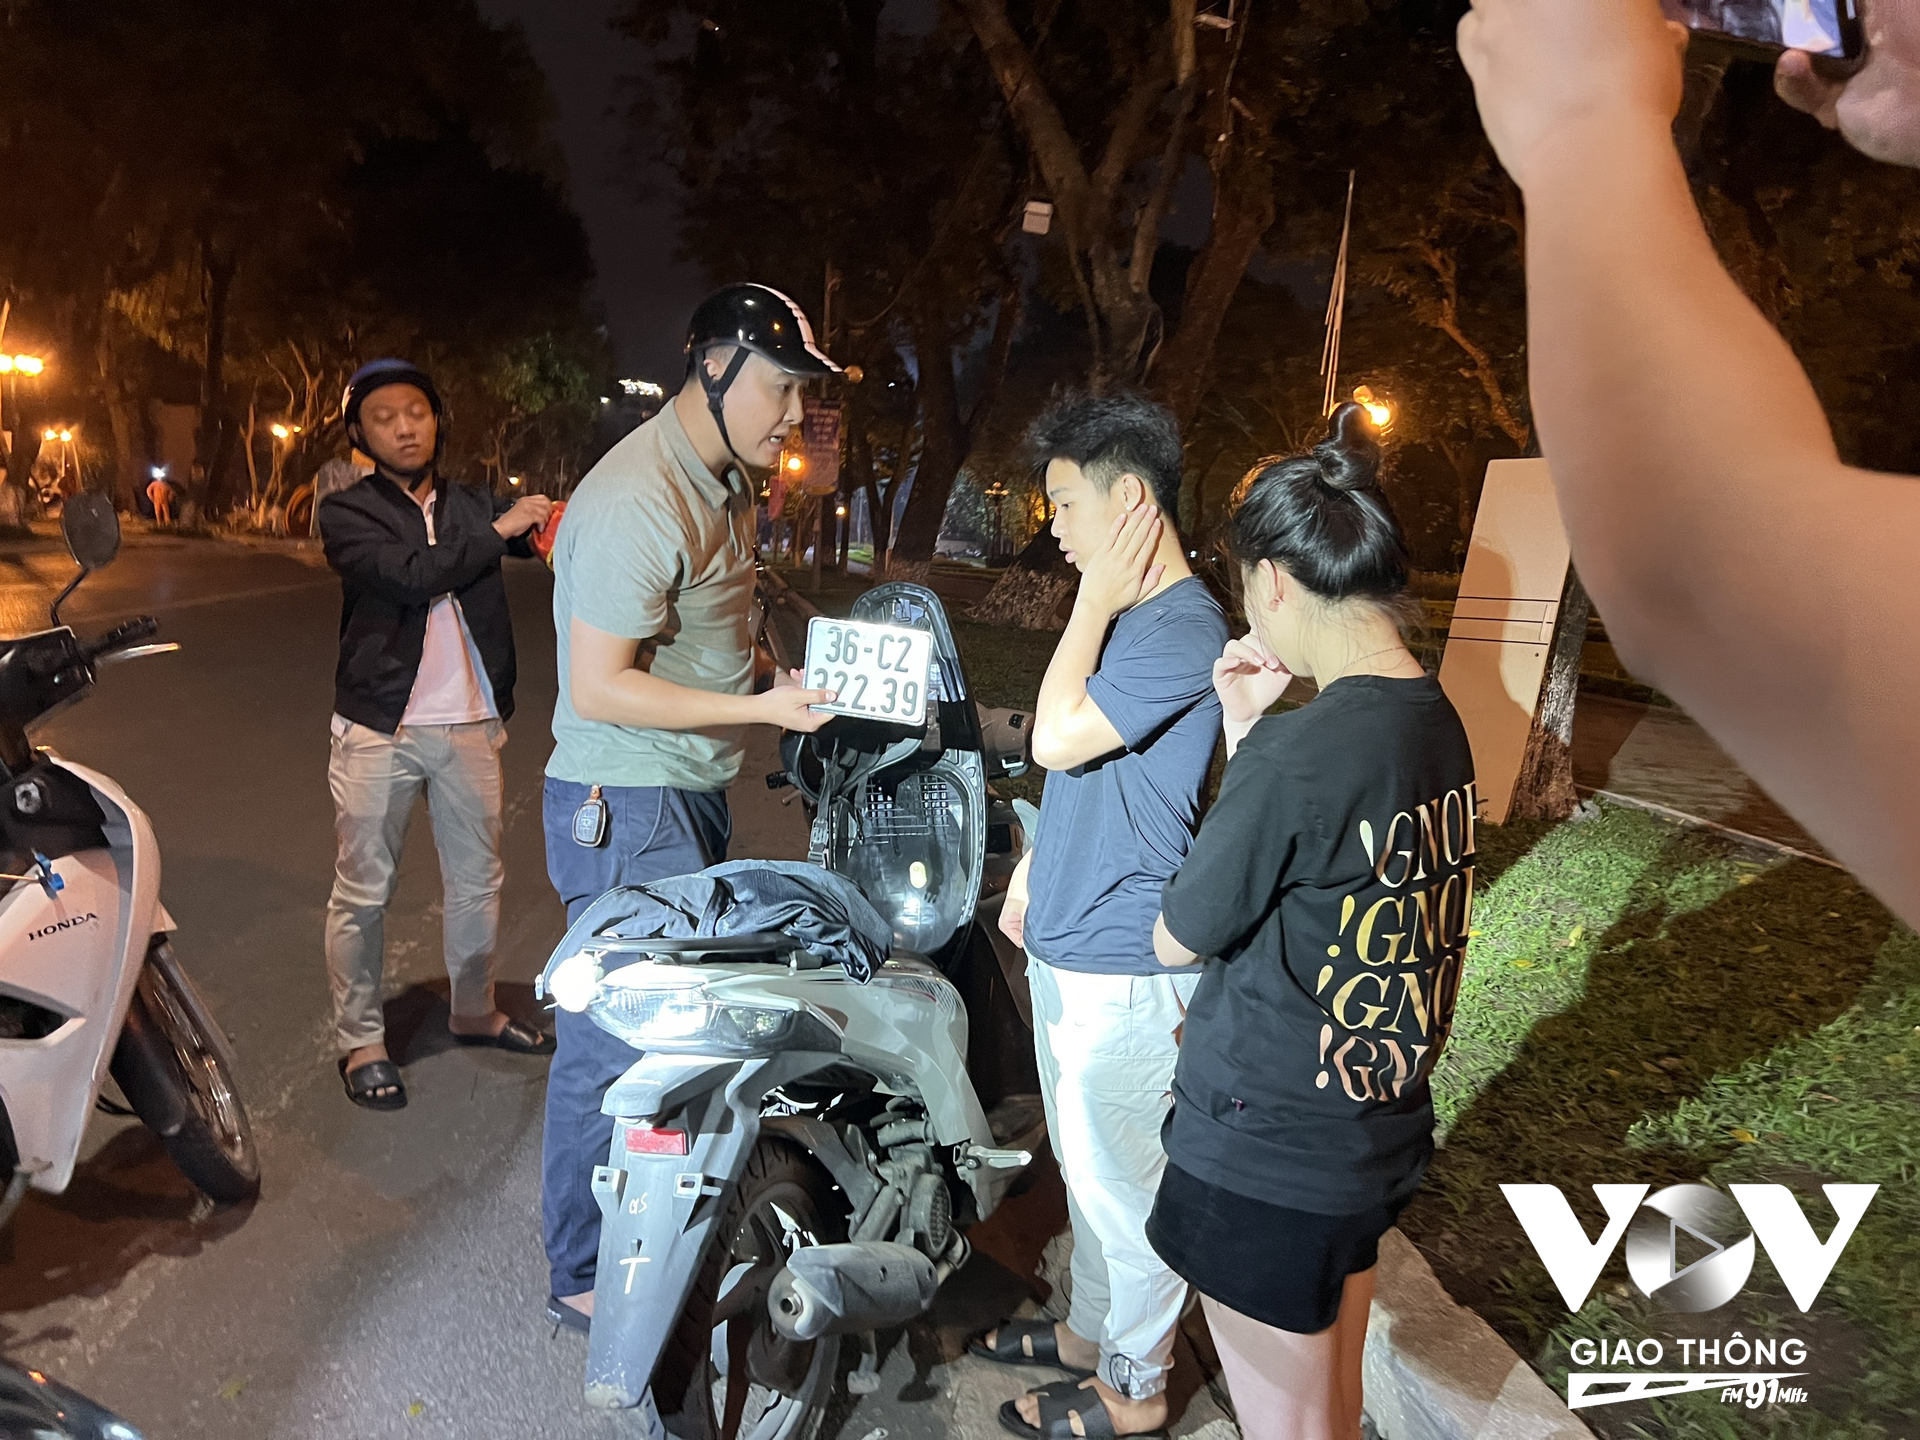 Ít phút sau, trước cửa công viên Thống Nhất (Trần Nhân Tông, Hà Nội), tổ công tác đã chặn giữ được 2 nam nữ thanh niên đi xe máy tháo biển kiểm soát…